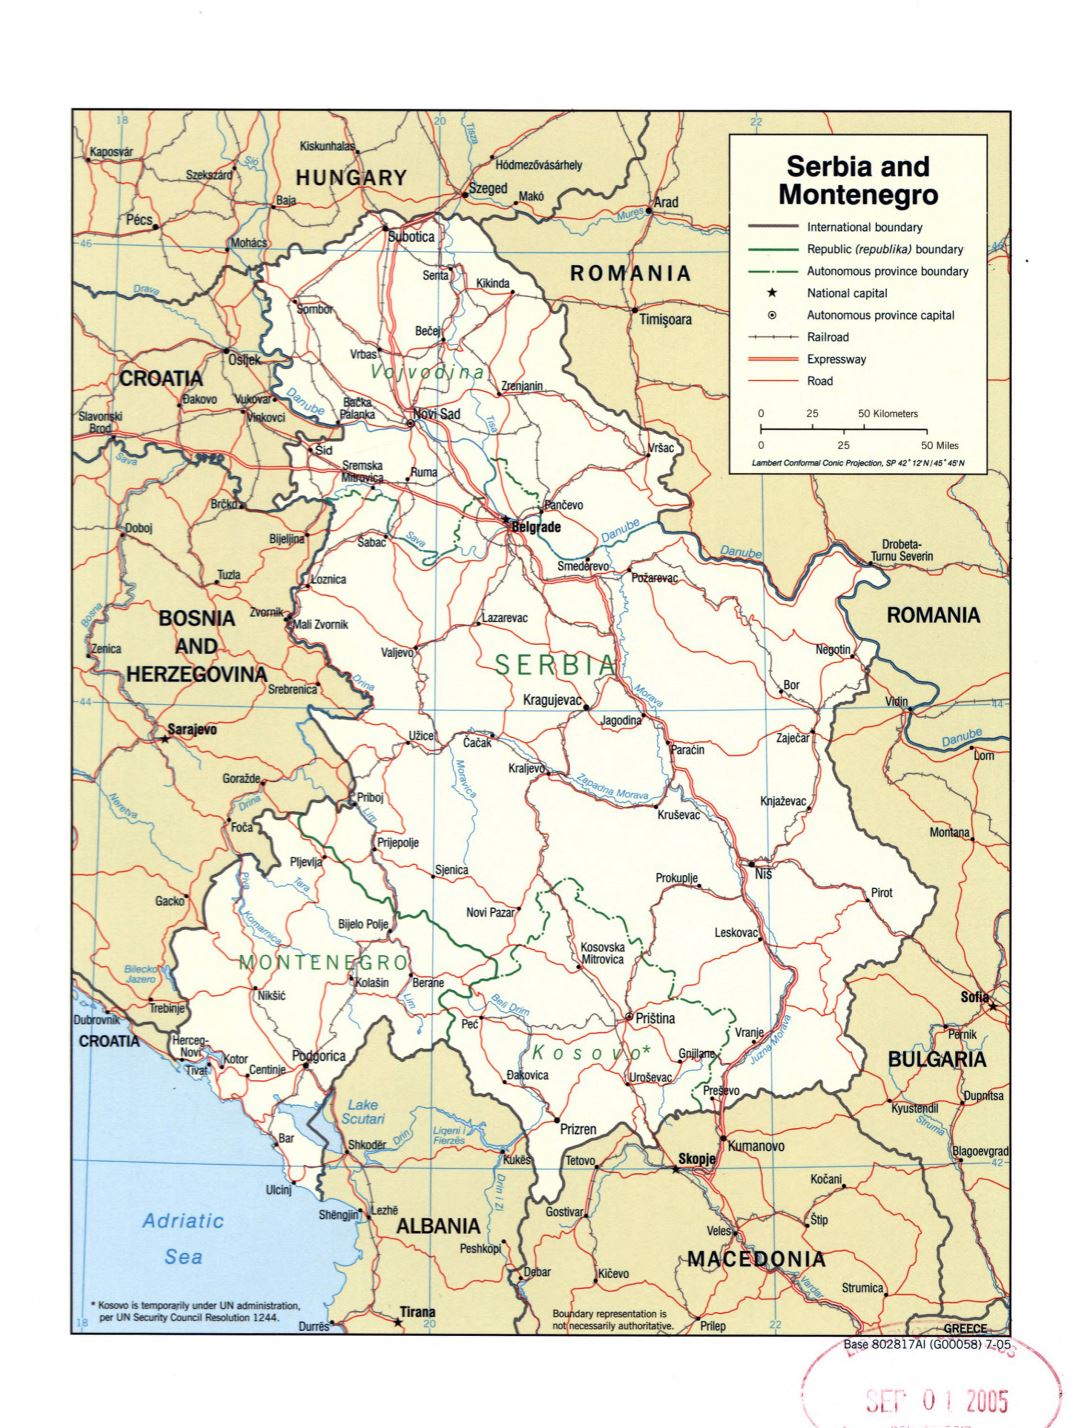 Grande detallado mapa político de Serbia y Montenegro con marcas de carreteras, ferrocarriles y grandes ciudades - 2005